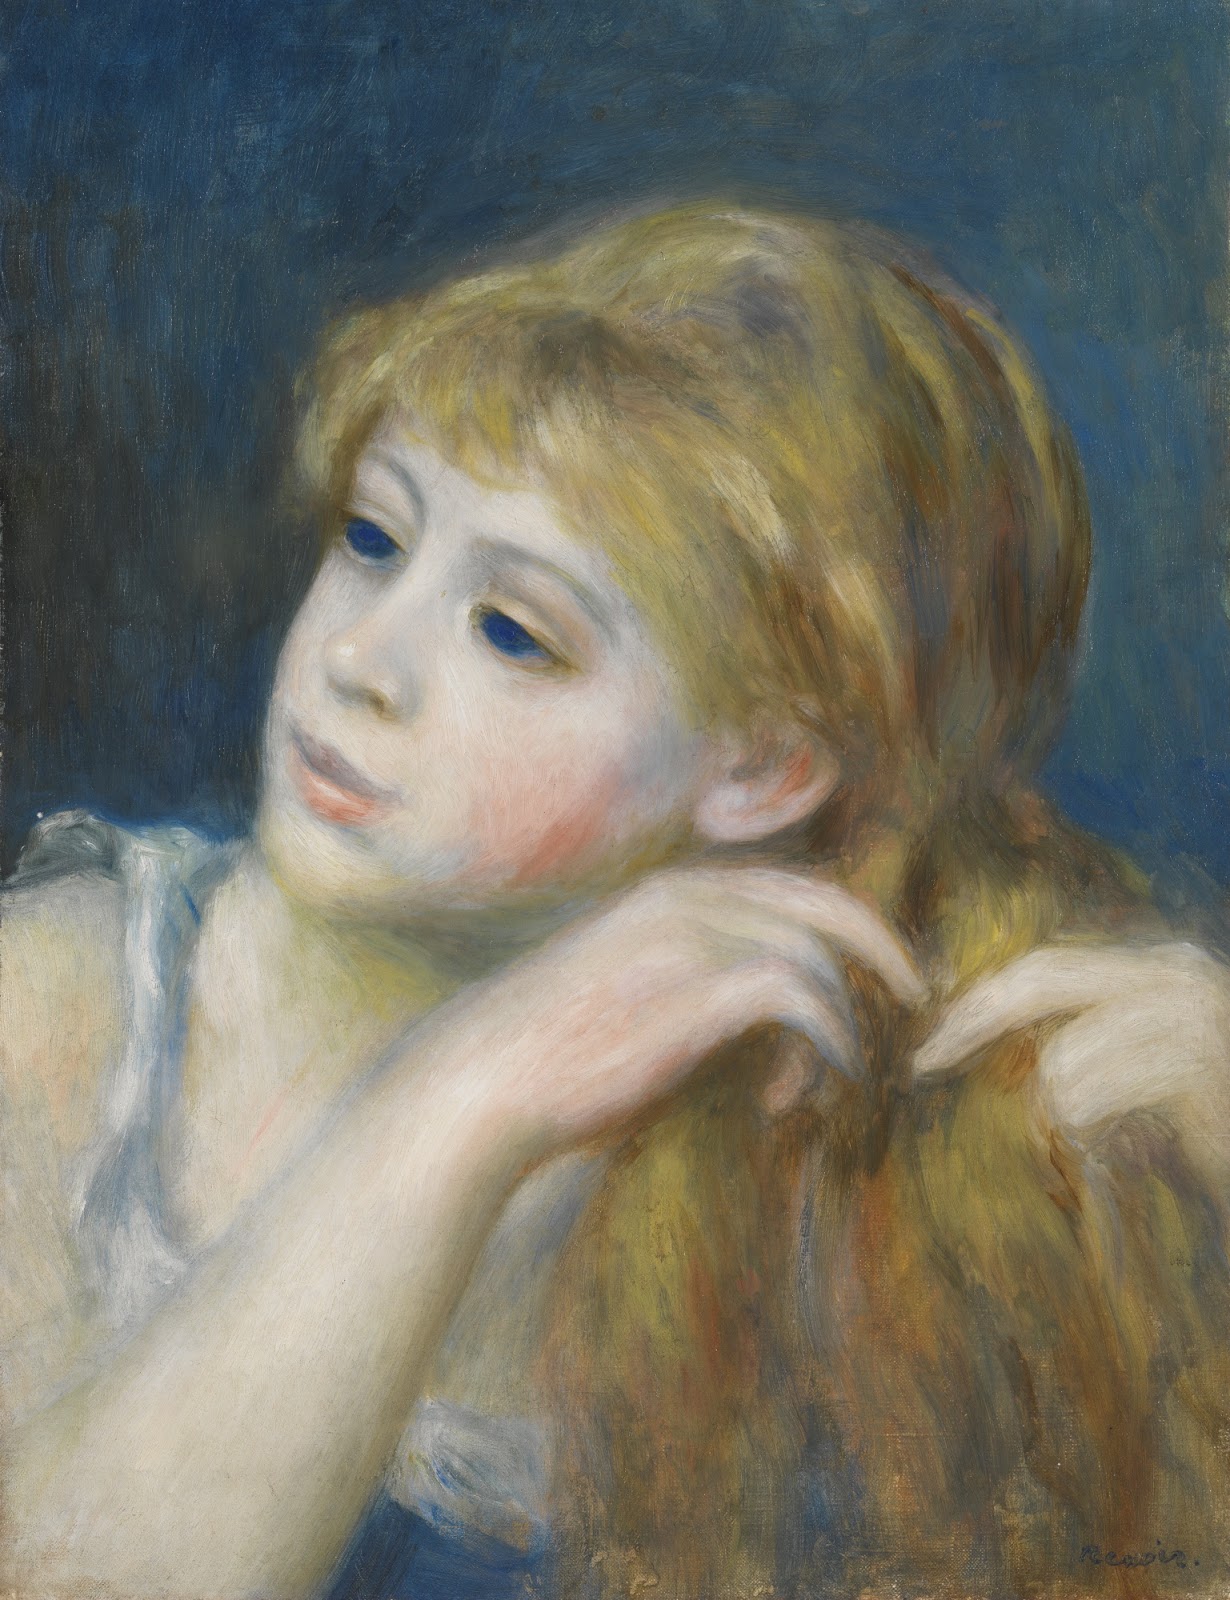 Pierre+Auguste+Renoir-1841-1-19 (1001).jpg